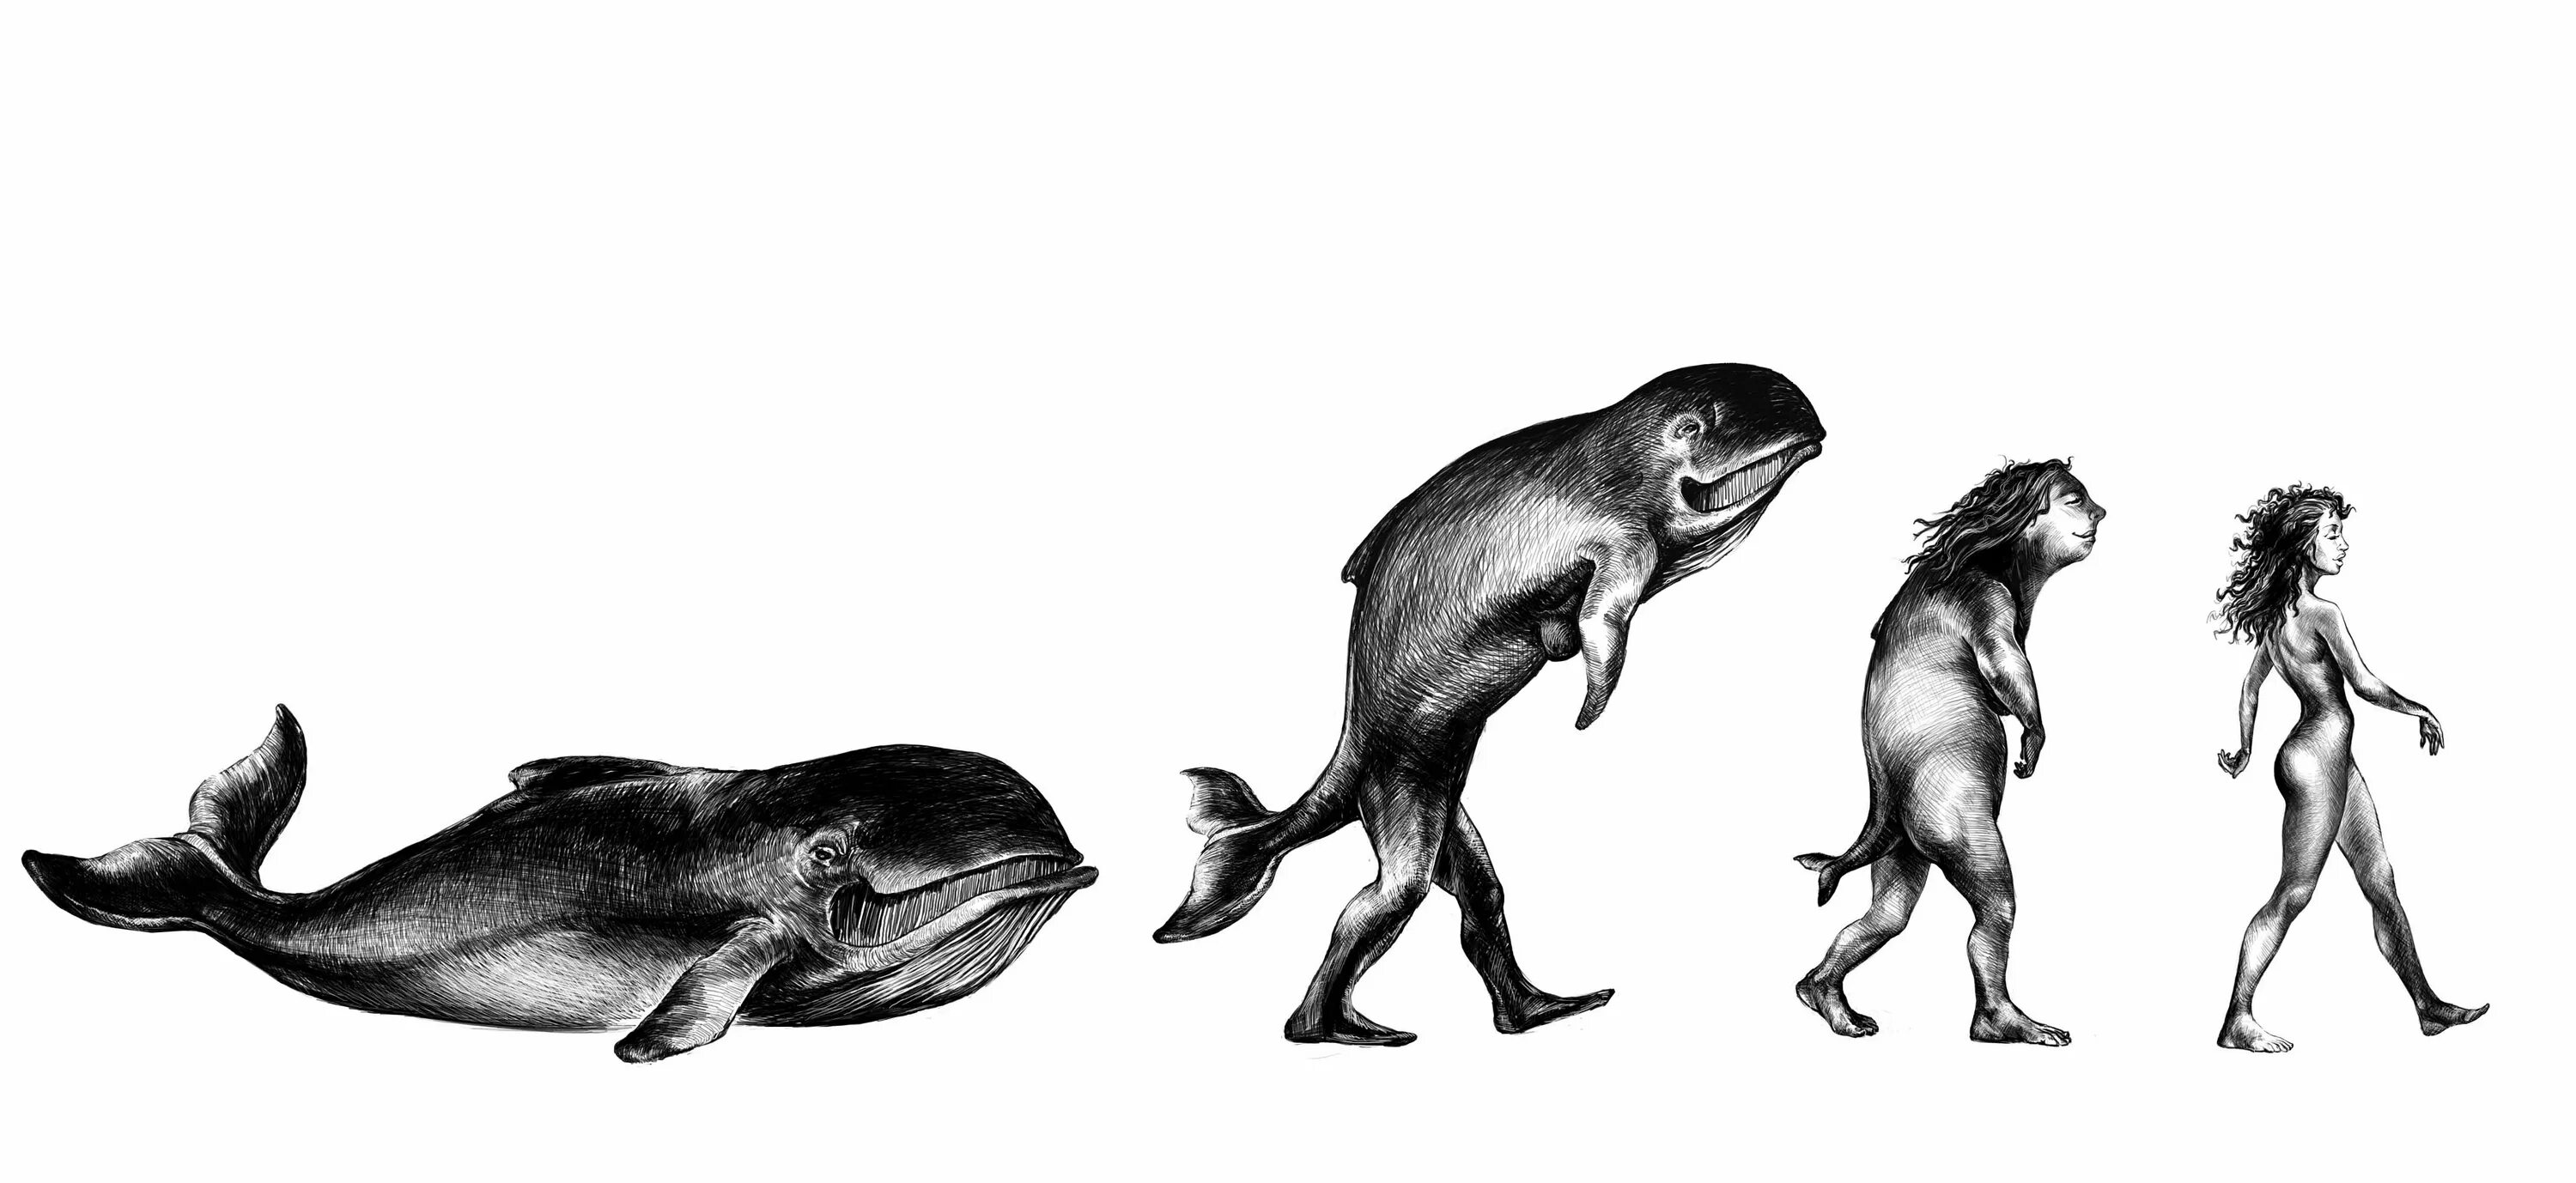 Жизнь в воде эволюция. Эволюция Дарвина биология. Предки дельфинов. Человек произошел от рыбы.